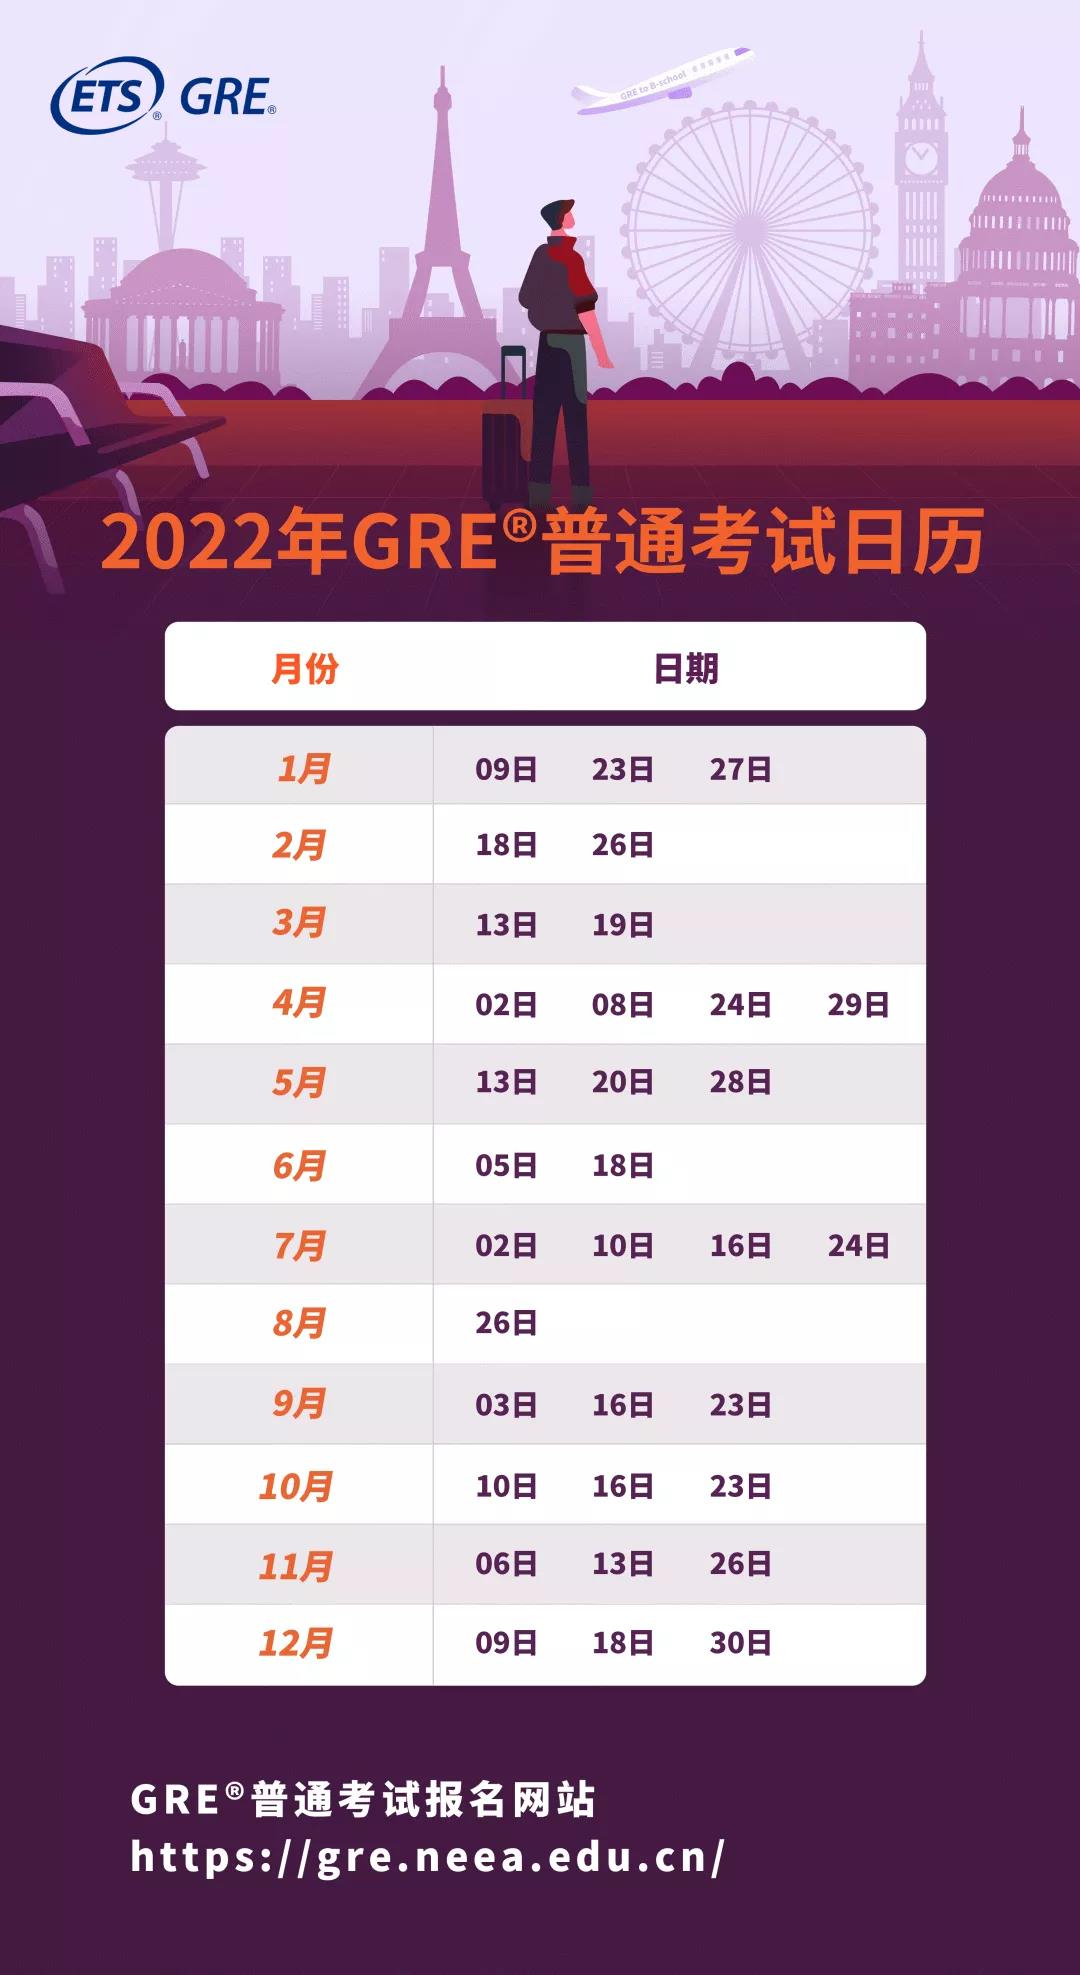 2022全年GRE考试时间安排